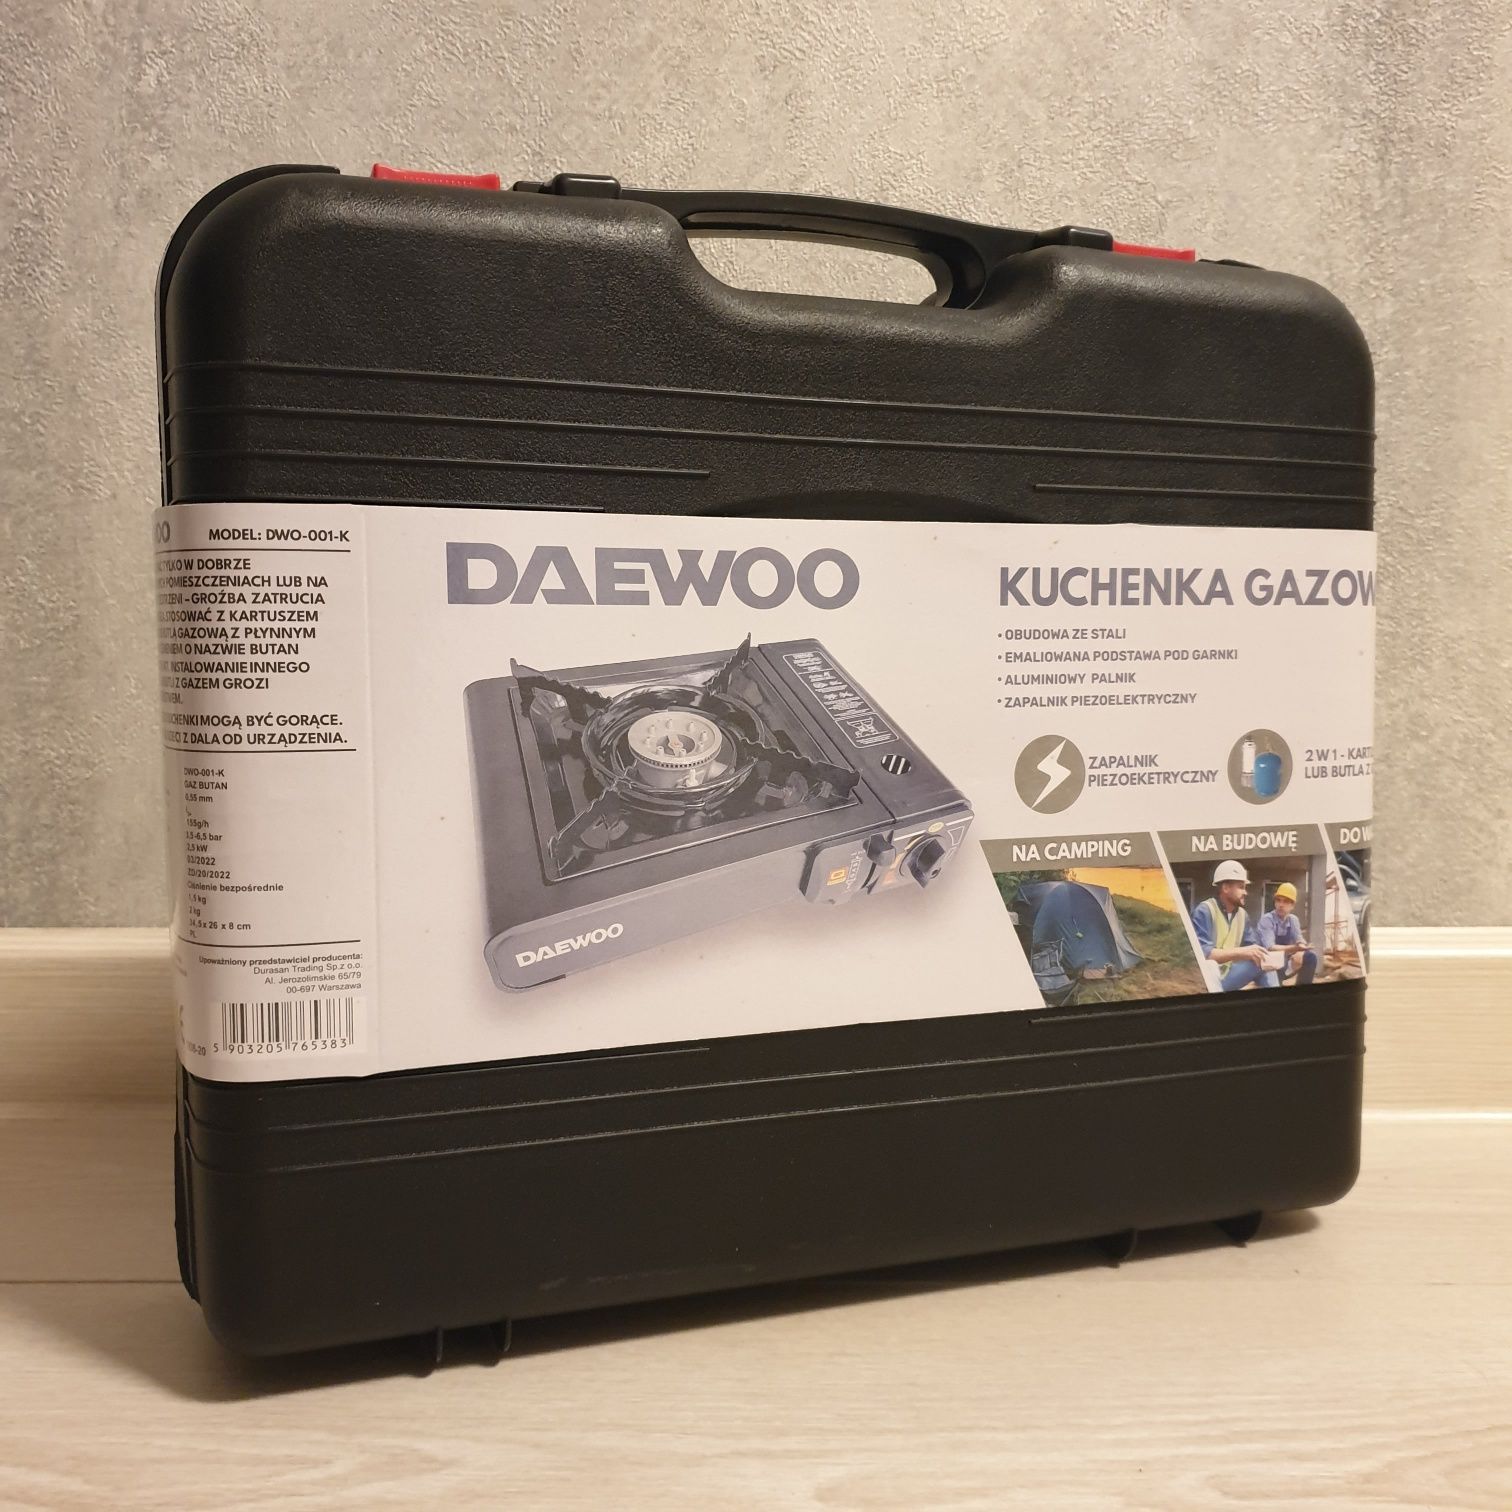 Портативна туристична газова плита Daewoo DWO-001-K 2 в 1